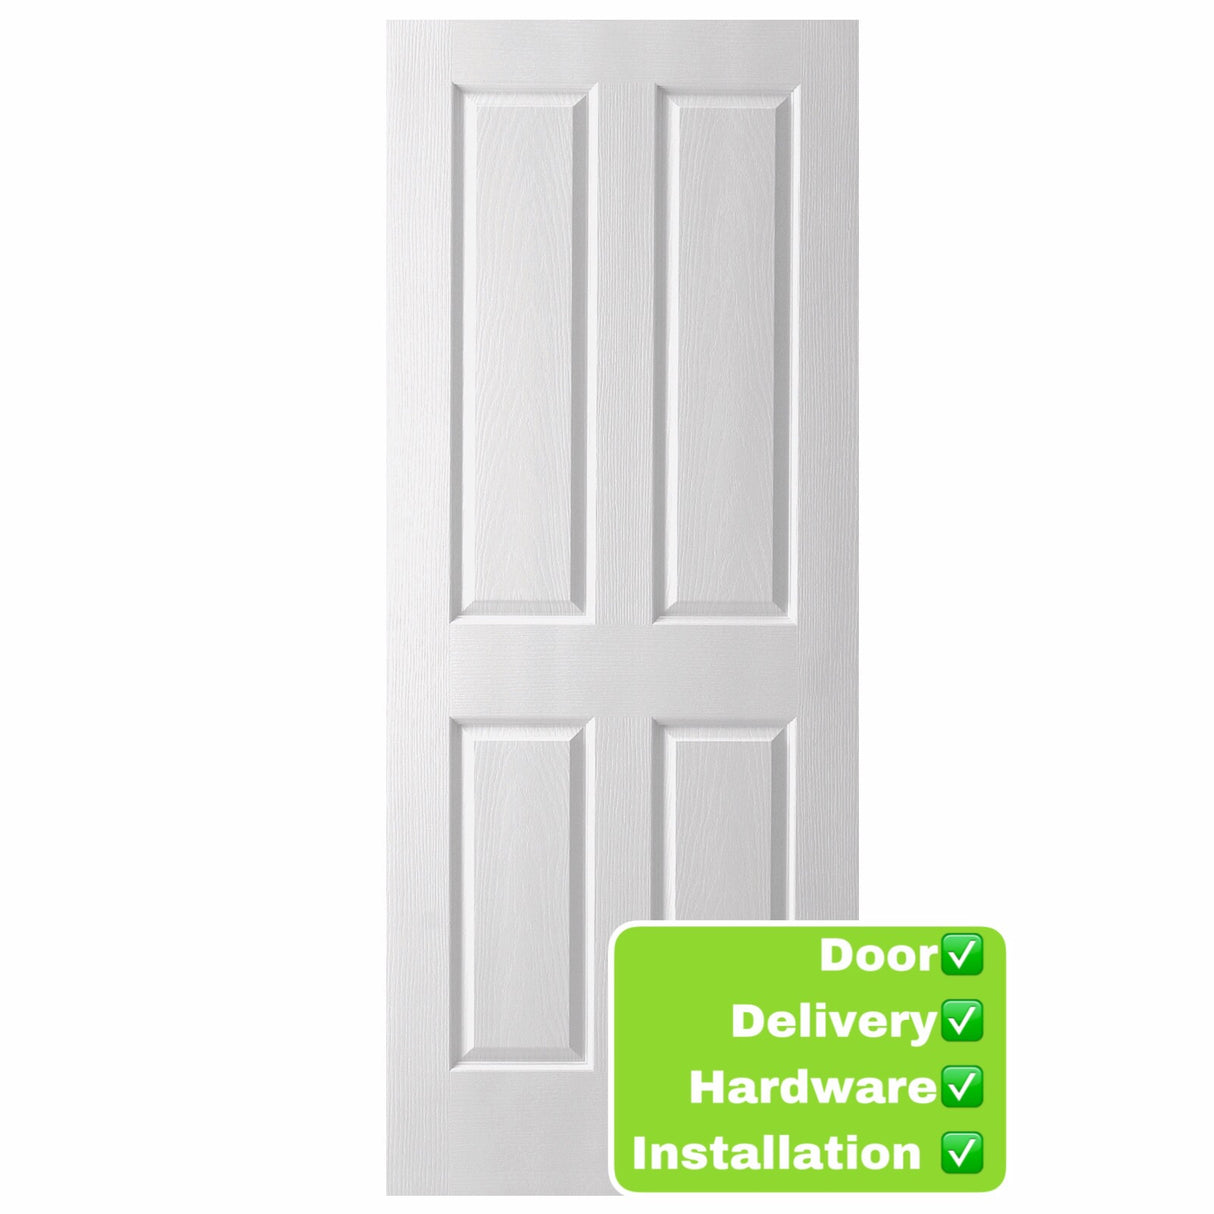 Oakfield OAK Internal Door 2040 range Installed package